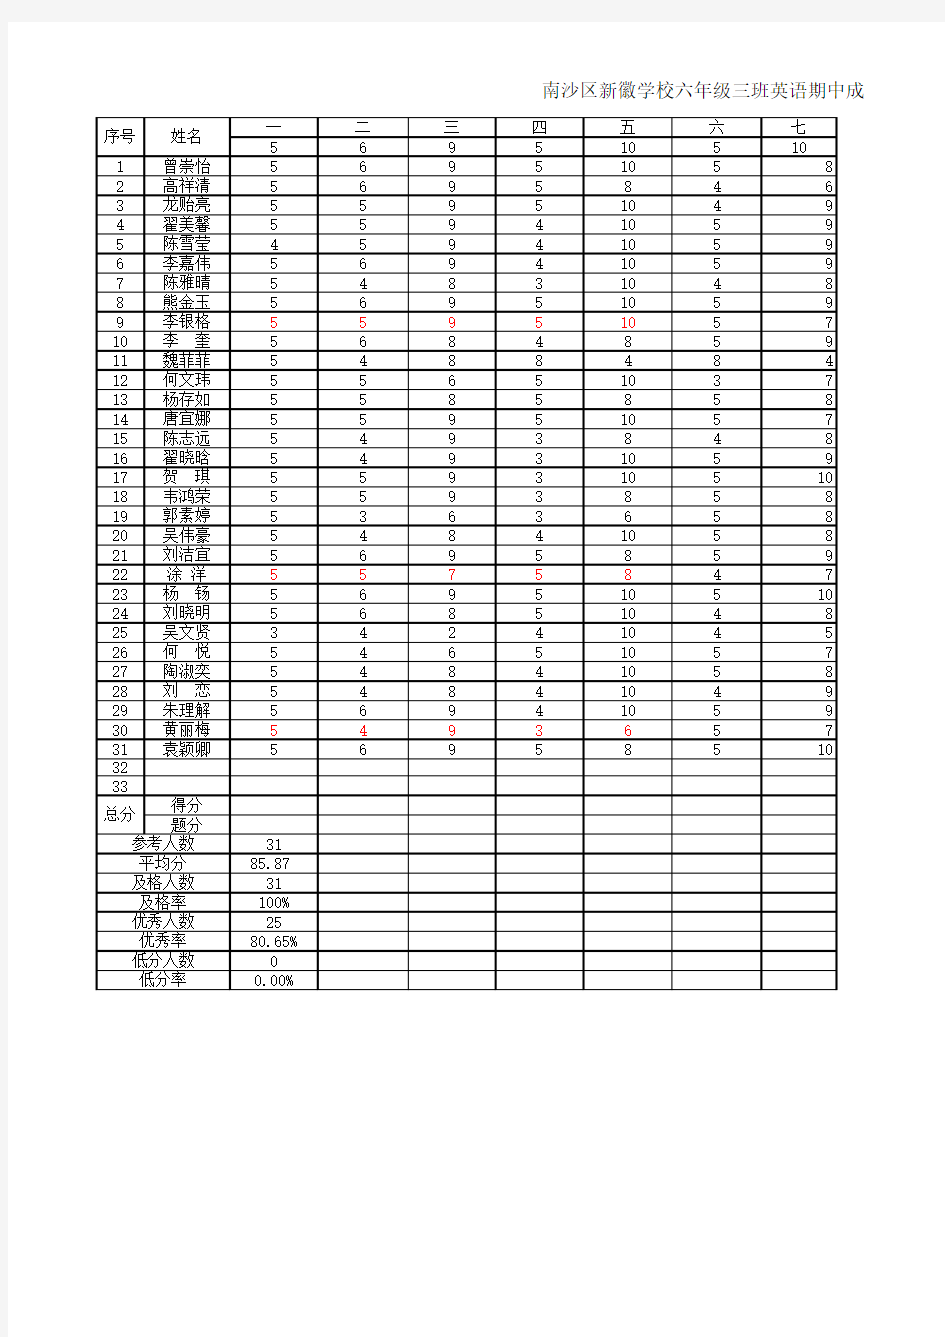 2014年秋学期英语期中成绩统计表(小题登分)